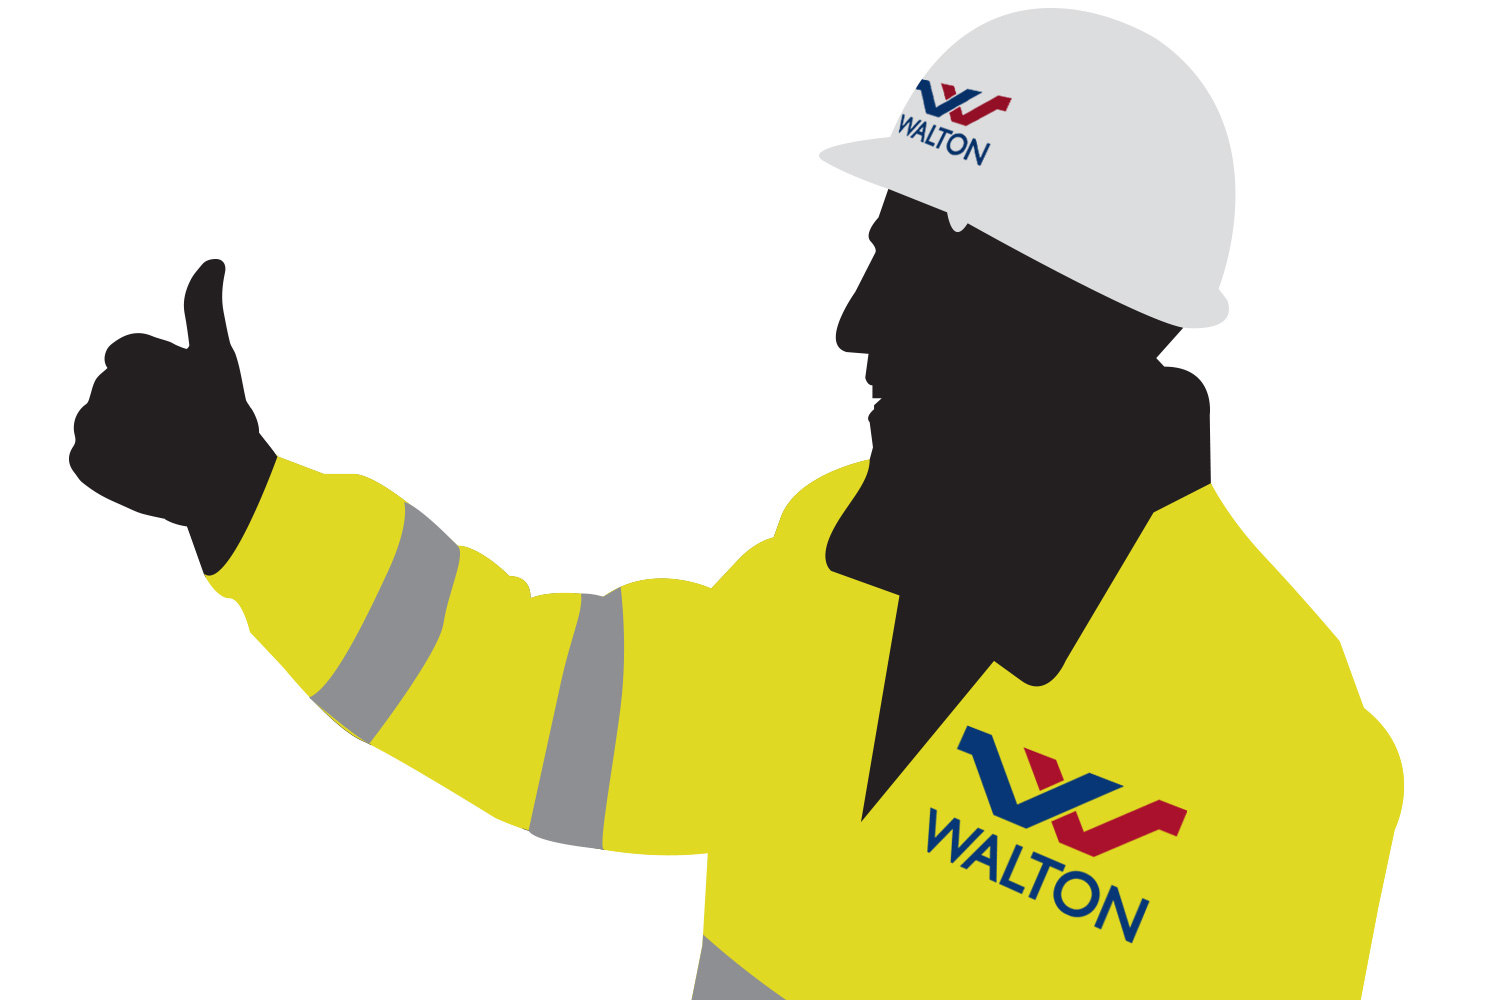 Walton workman